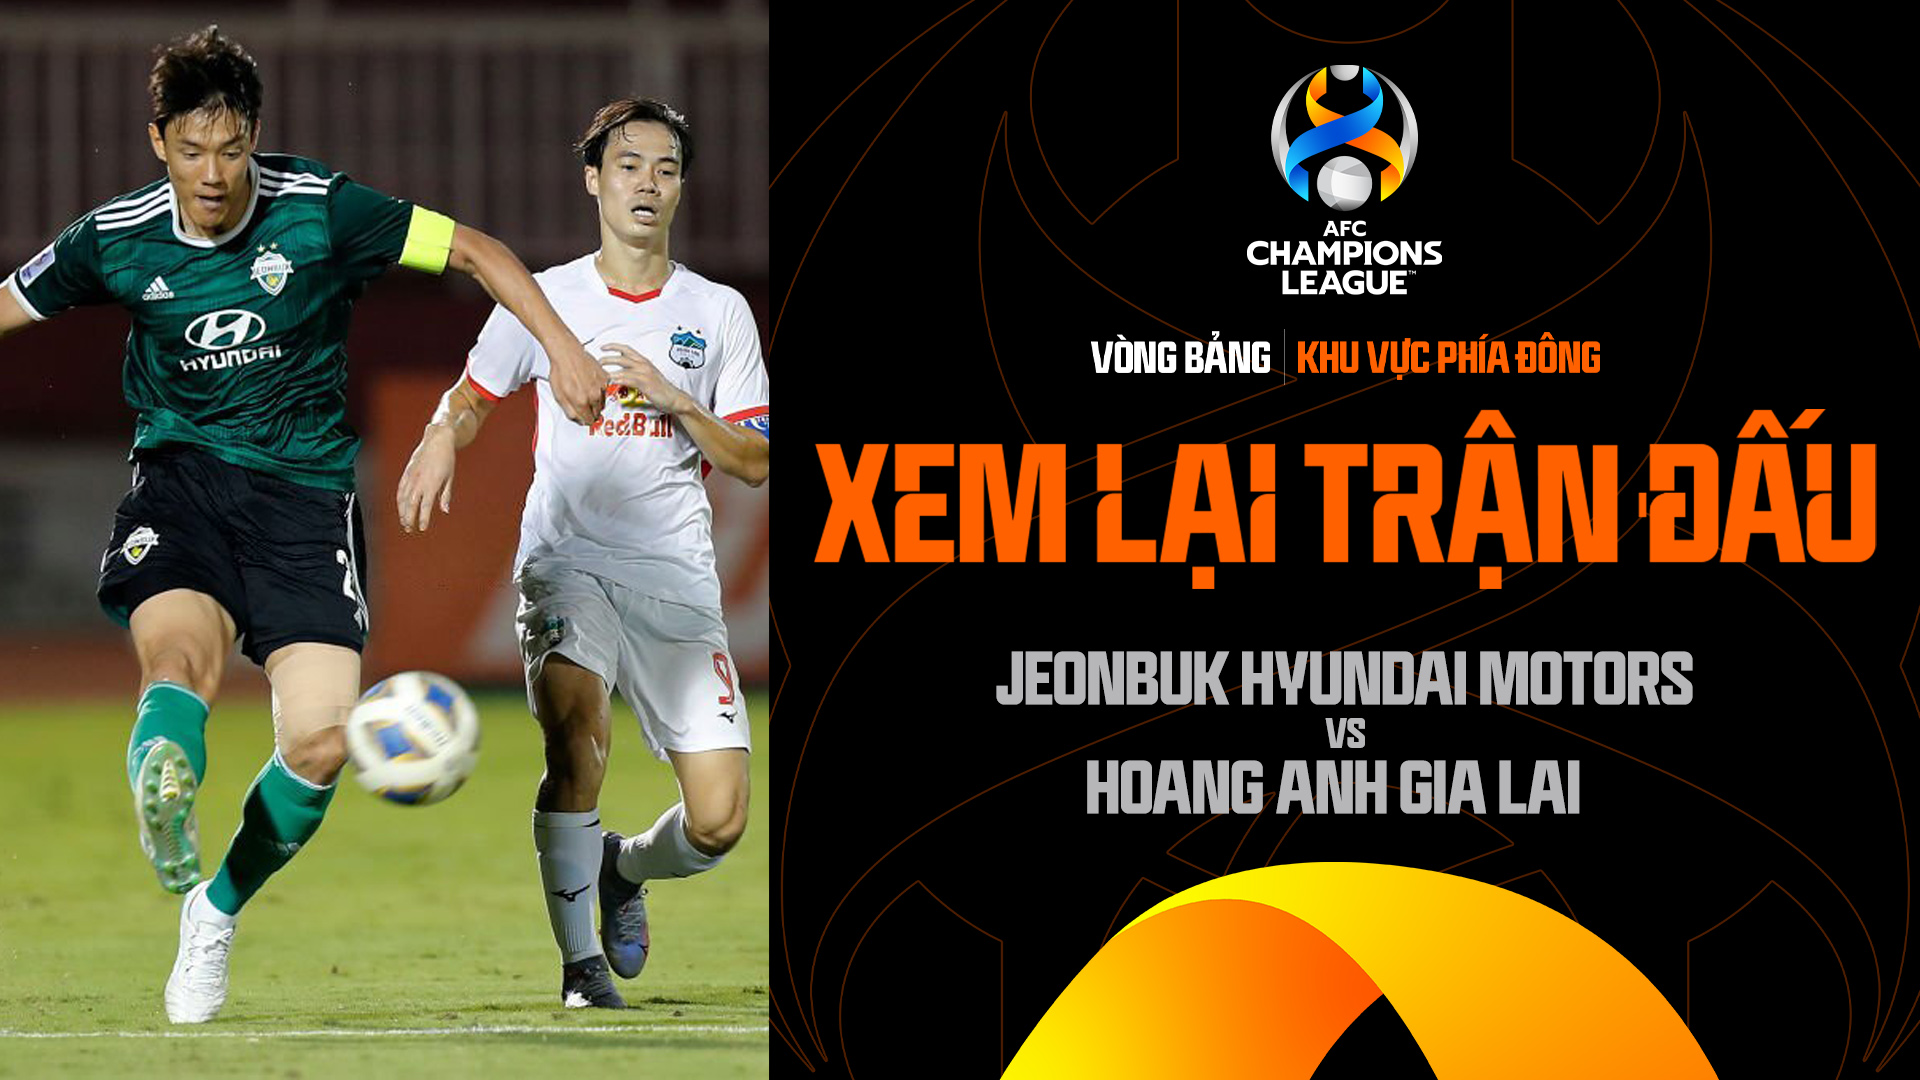 Jeonbuk Hyundai Motors - Hoàng Anh Gia Lai | Xem lại trận đấu - AFC Champions League